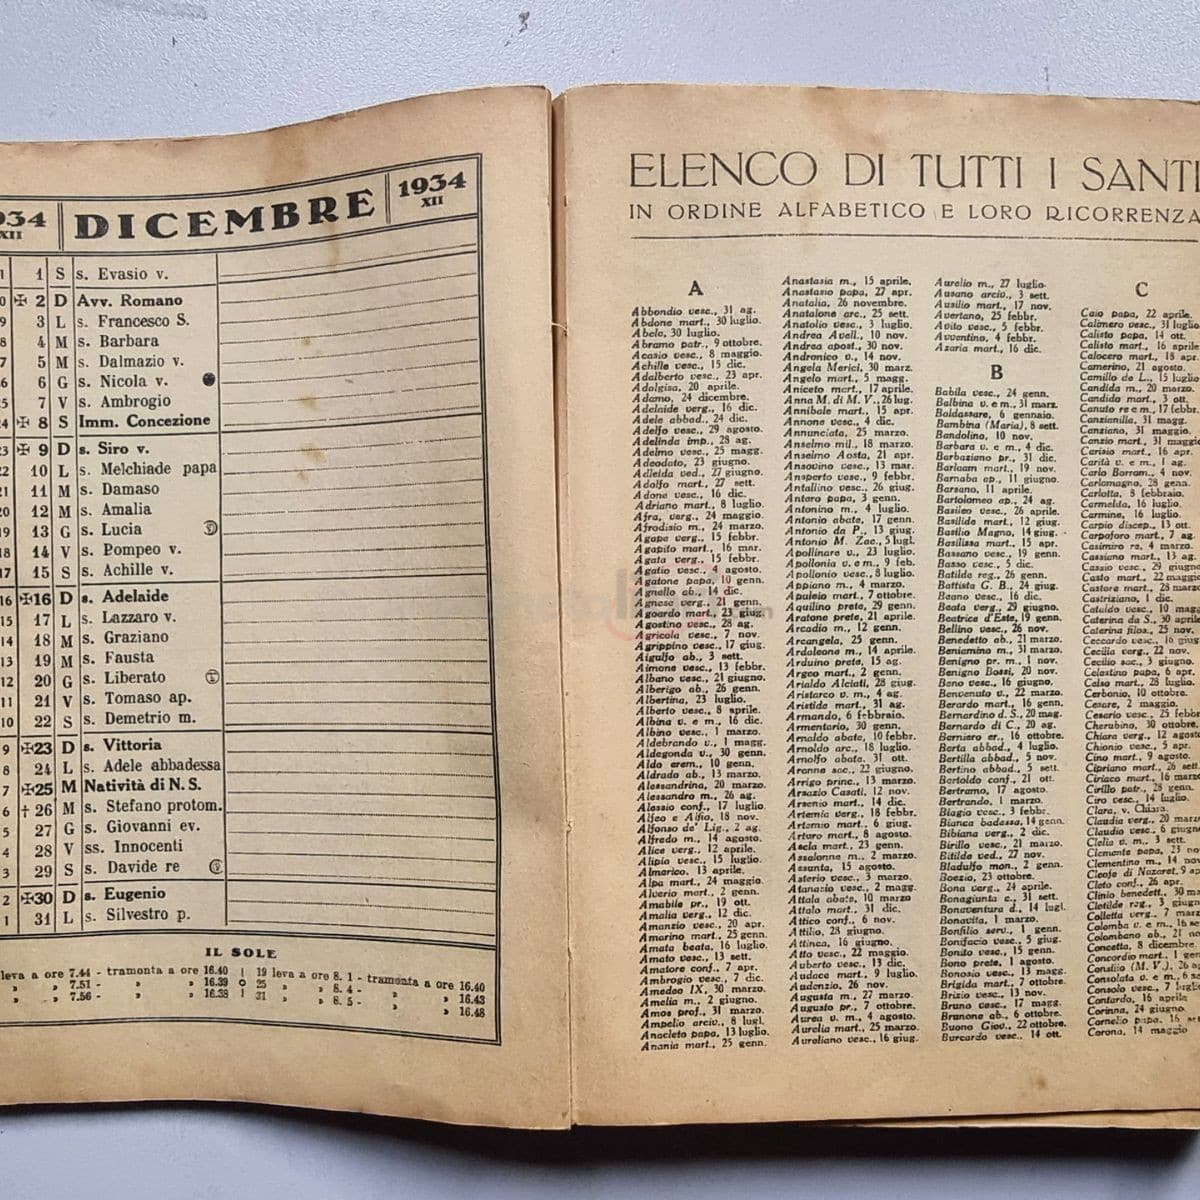 ALMANACCO DELLA CUCINA 1934 - XII L'AMICO DELLA MASSAIA